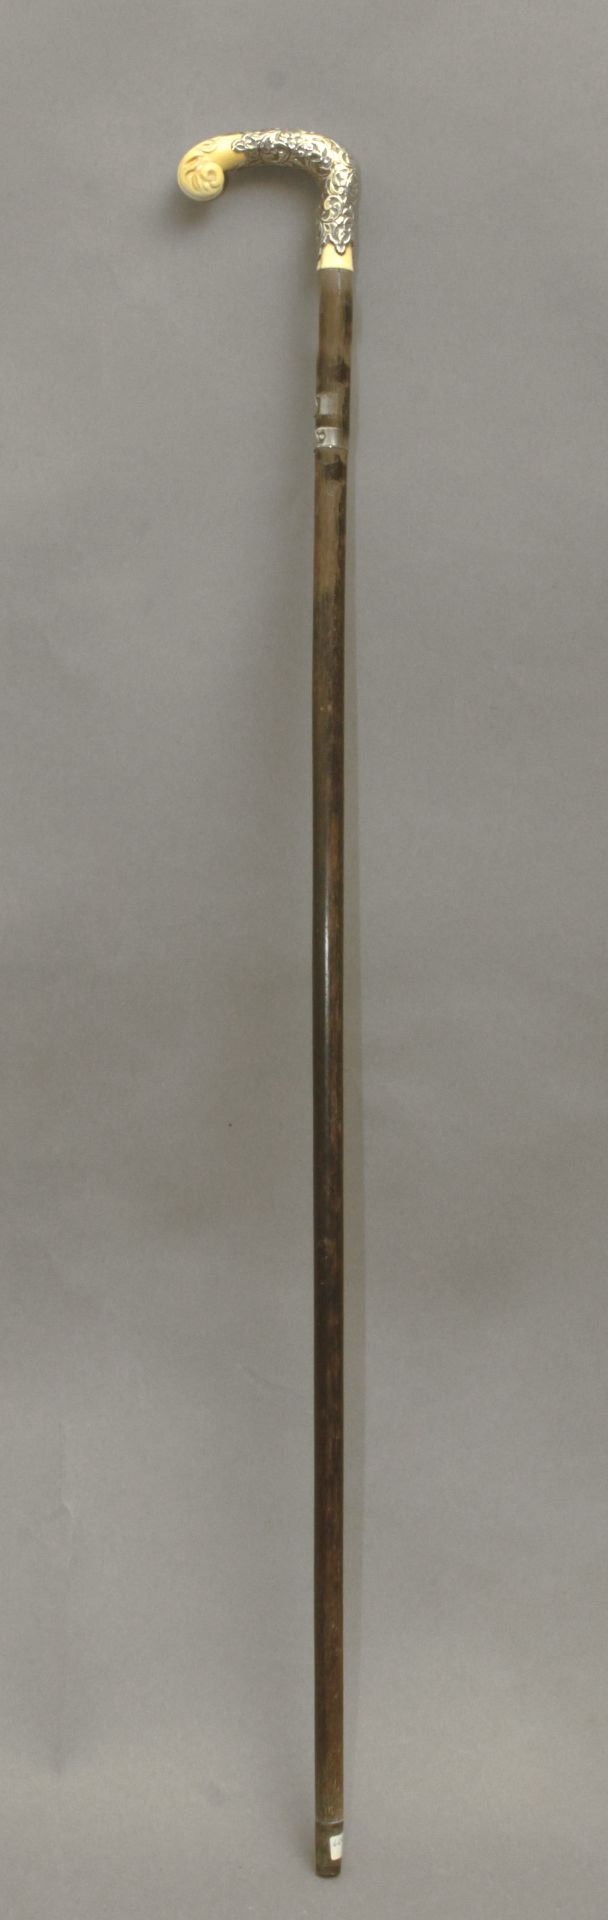 An ivory handled dress cane circa 1900 - Bild 3 aus 8